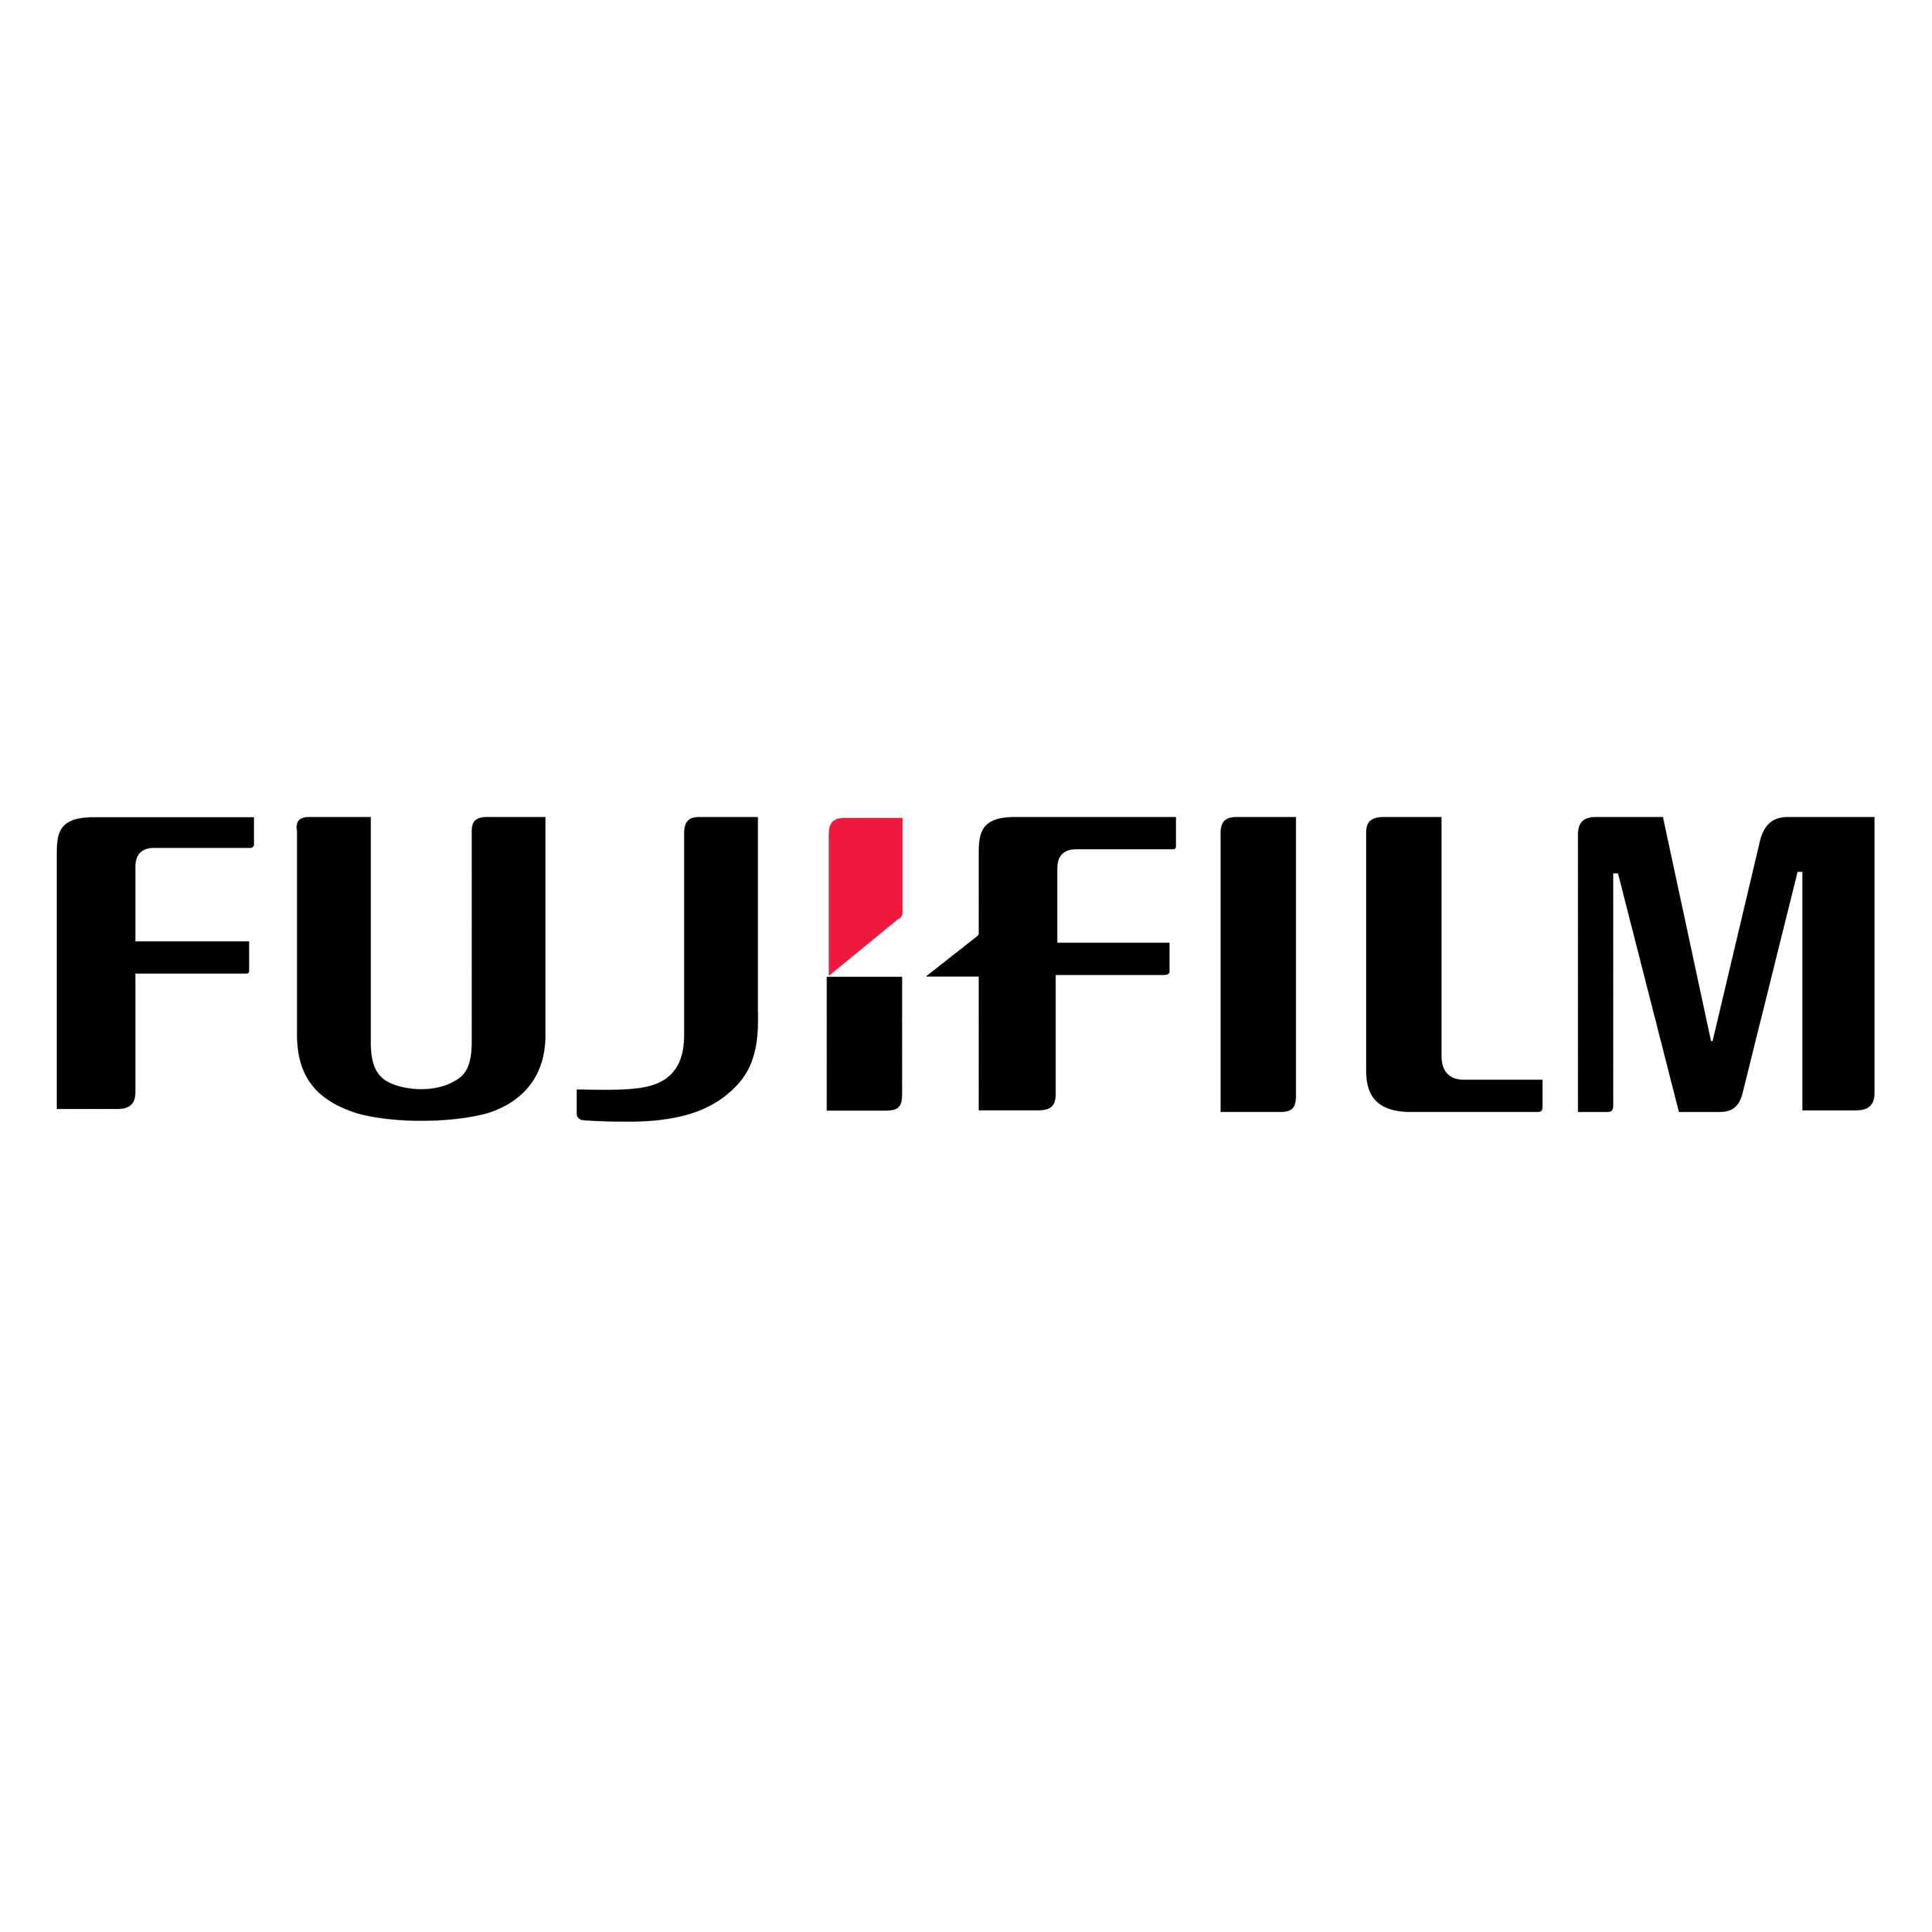 Equiptrack includes Fujifilm equipment